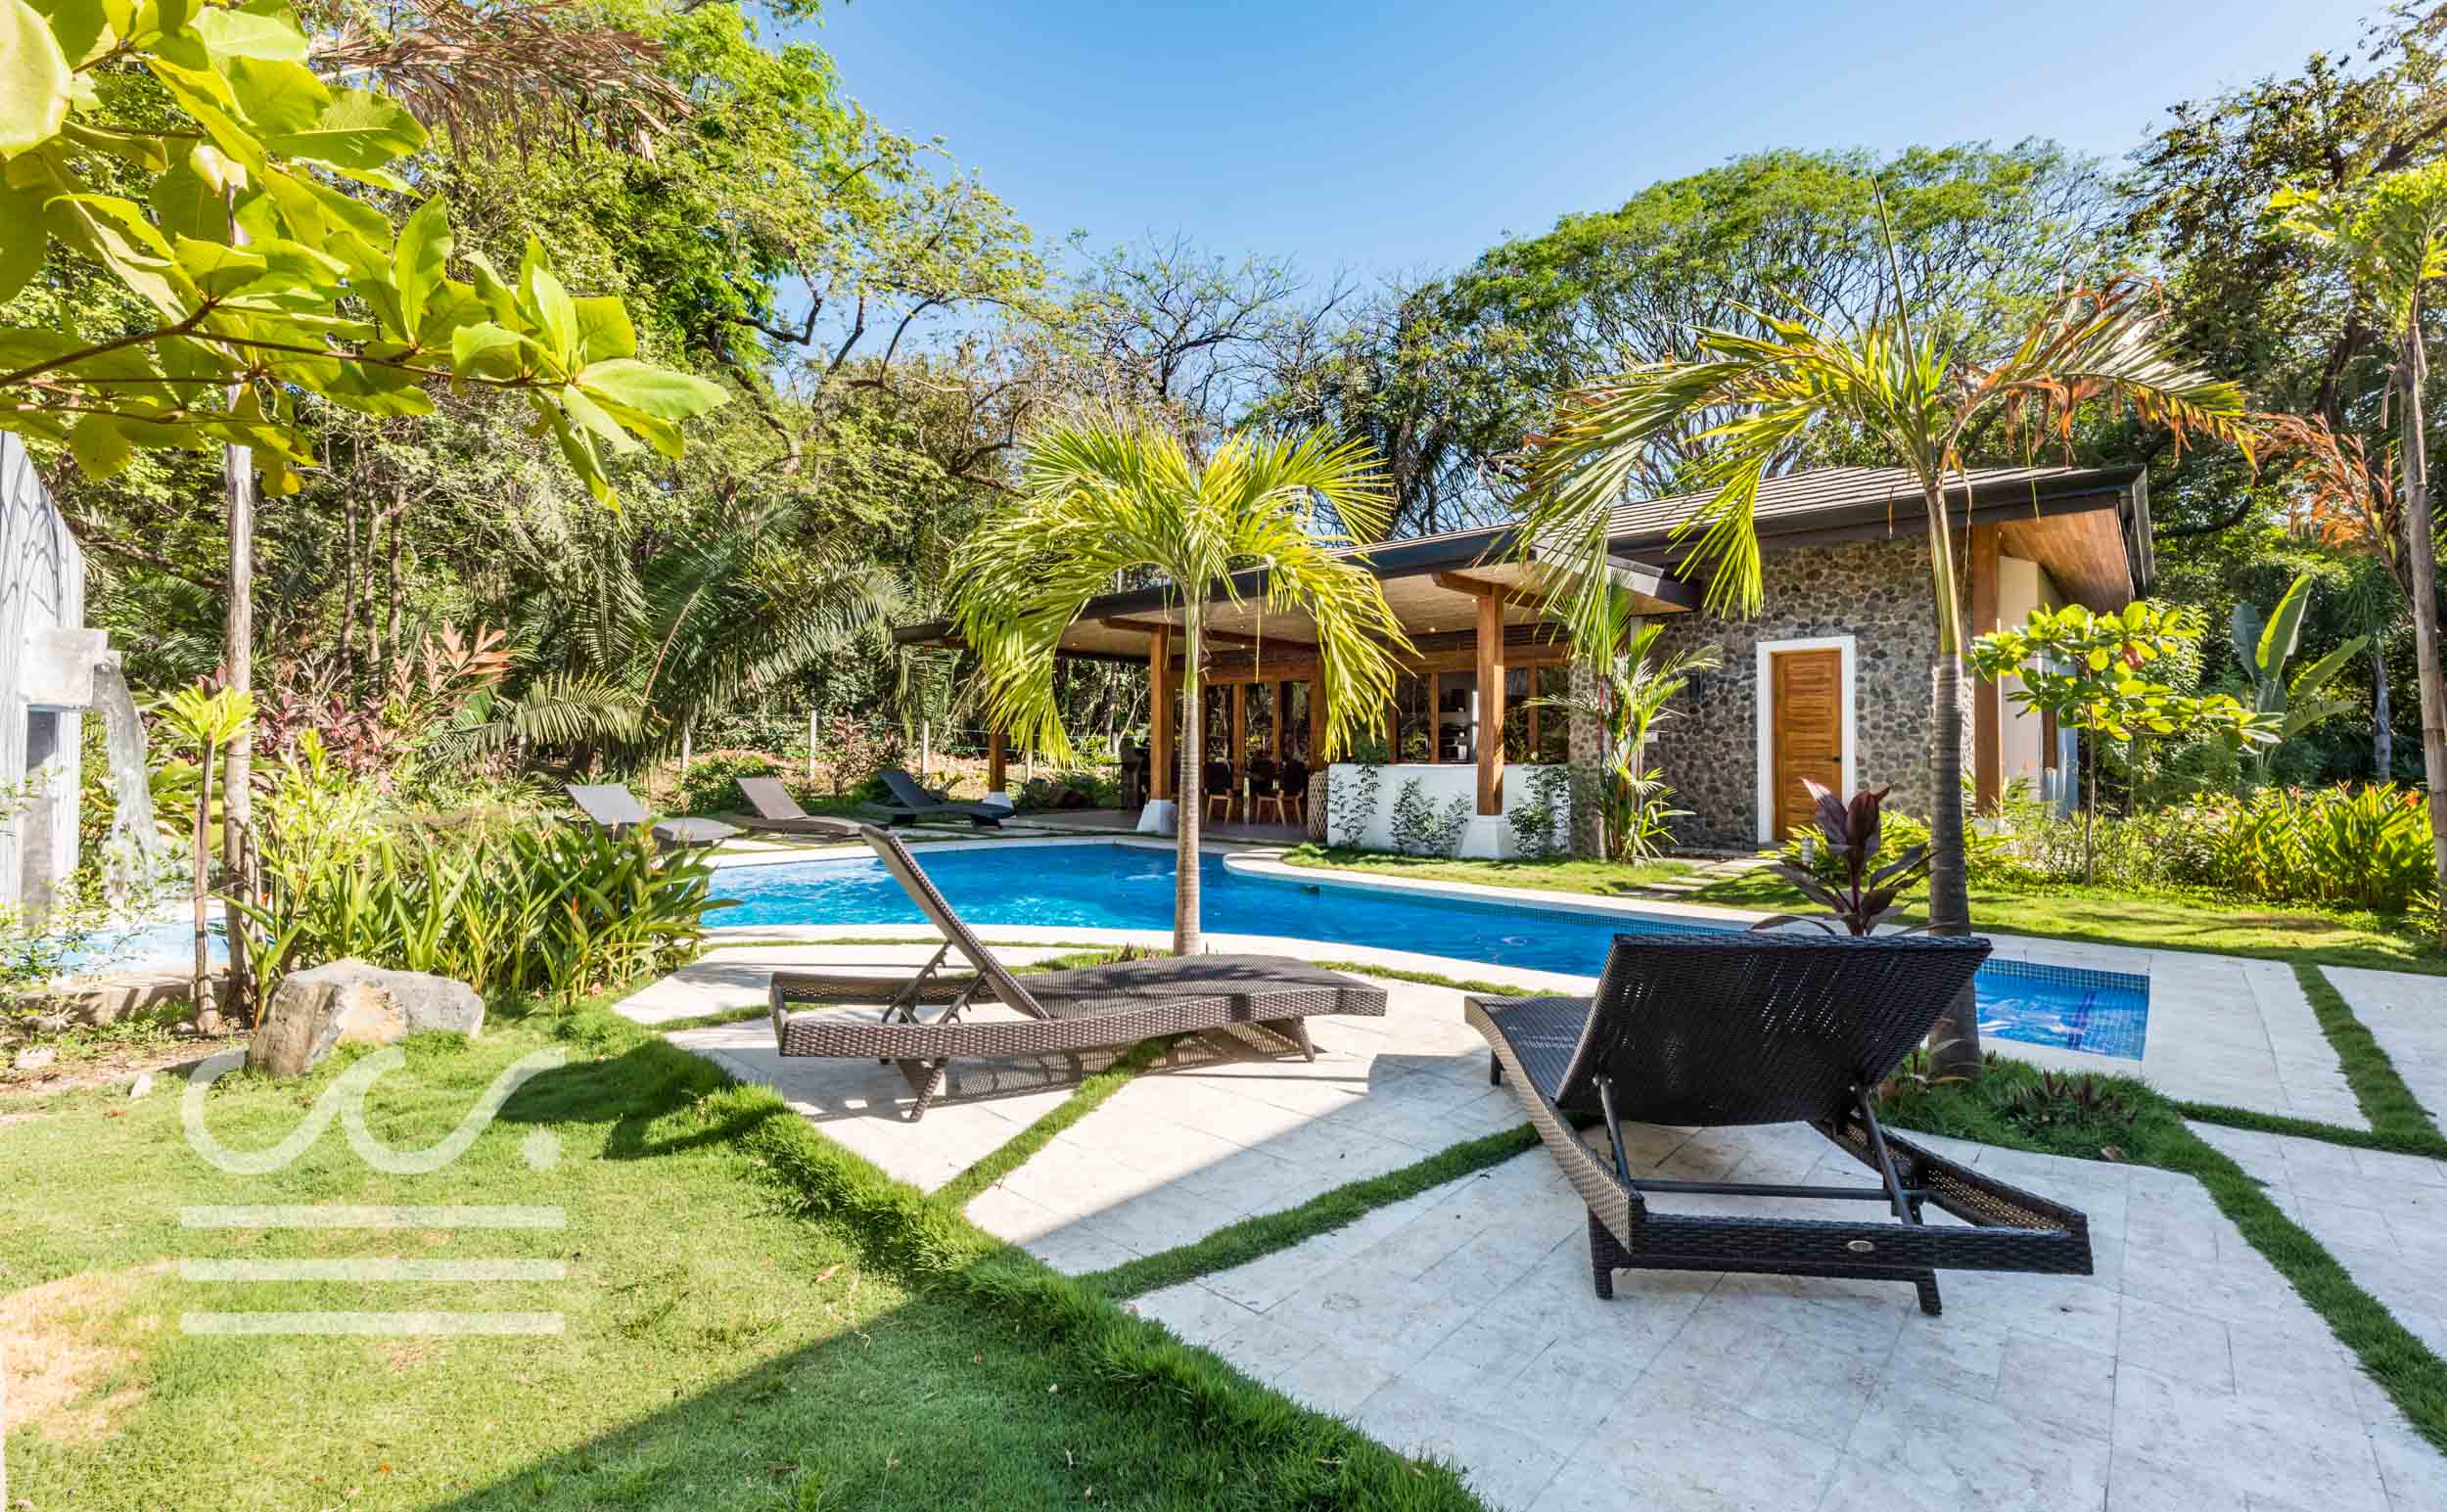 Villa-Lola-Wanderlust-Realty-Real-Estate-Nosara-Costa-Rica-7.jpg